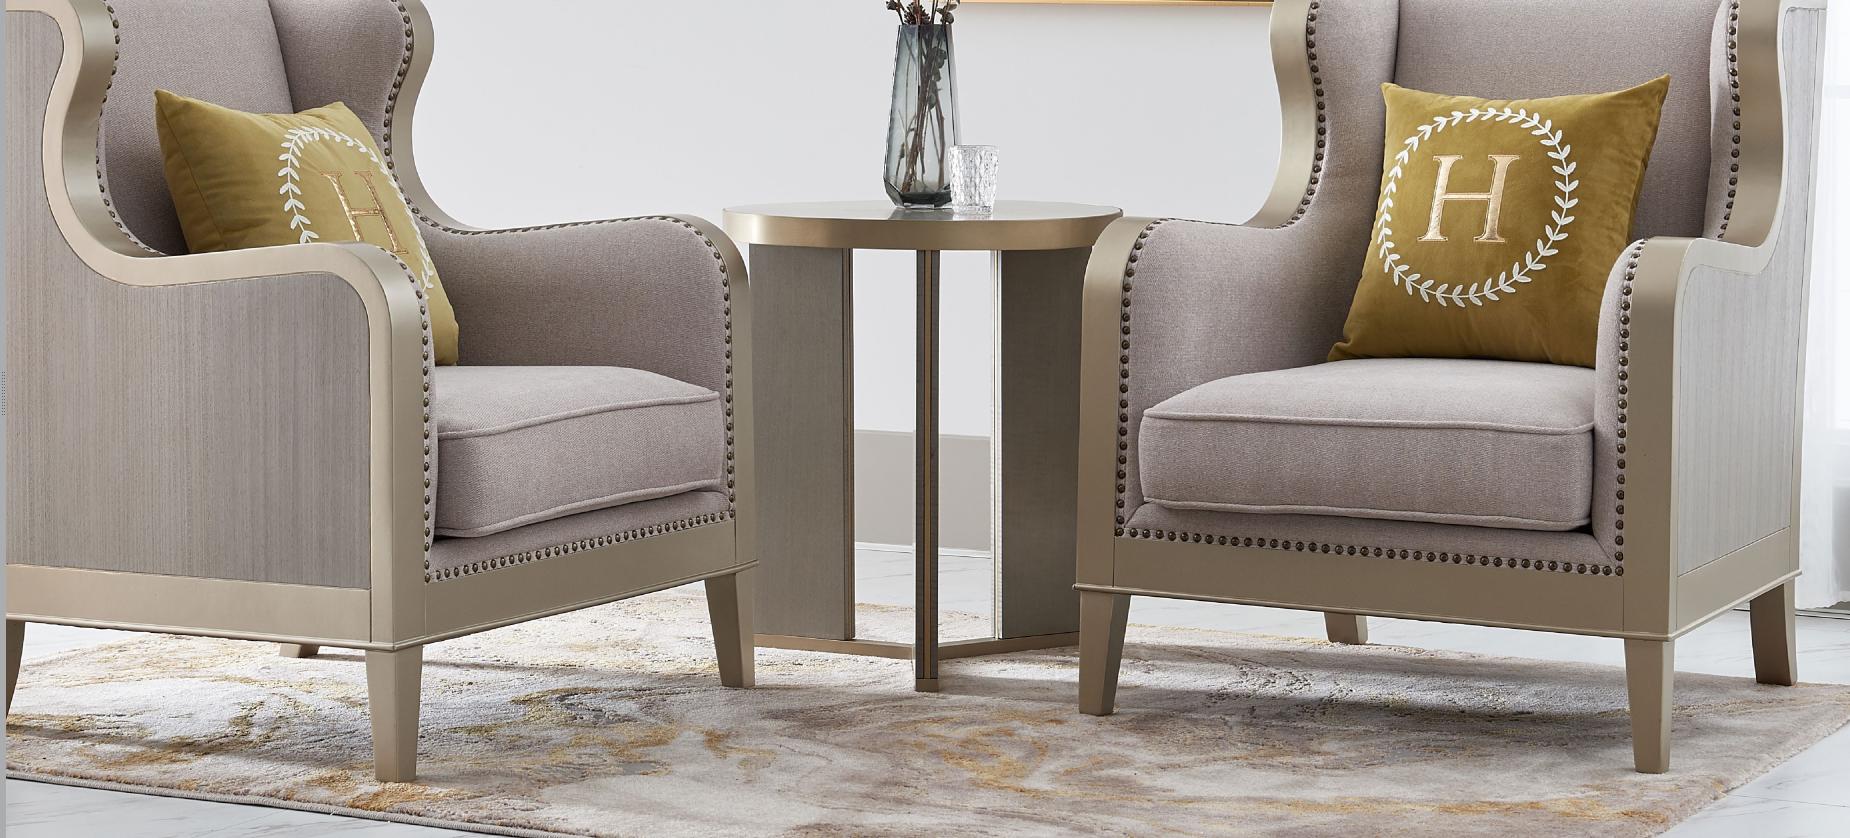 Luxus Design Couch Tisch Kaffee Beistell Tische Wohnzimmer Italienische Möbel